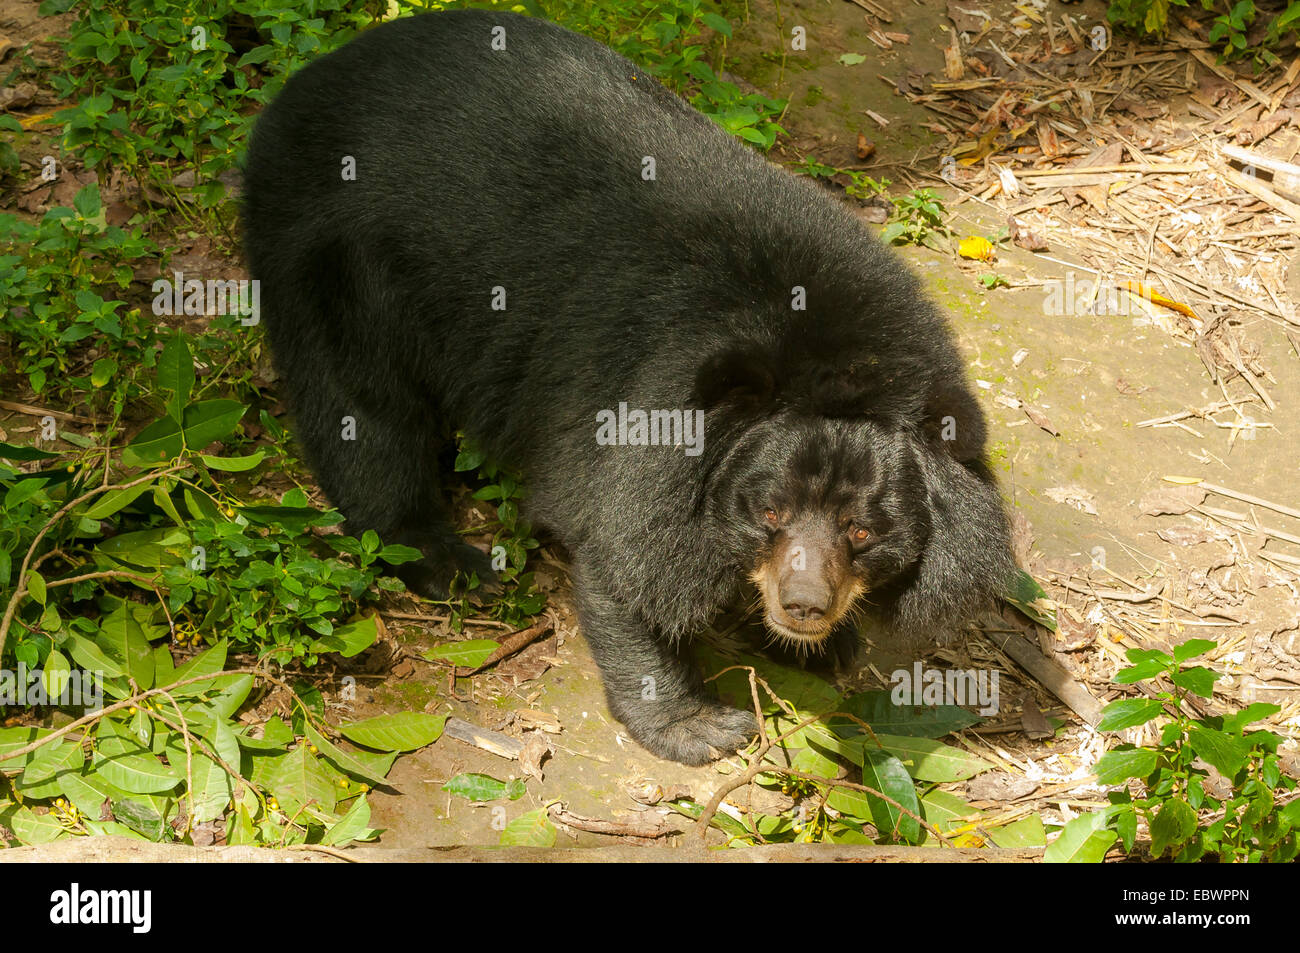 Black Bear at Rescue Centre, Kuang Si, Laos Stock Photo